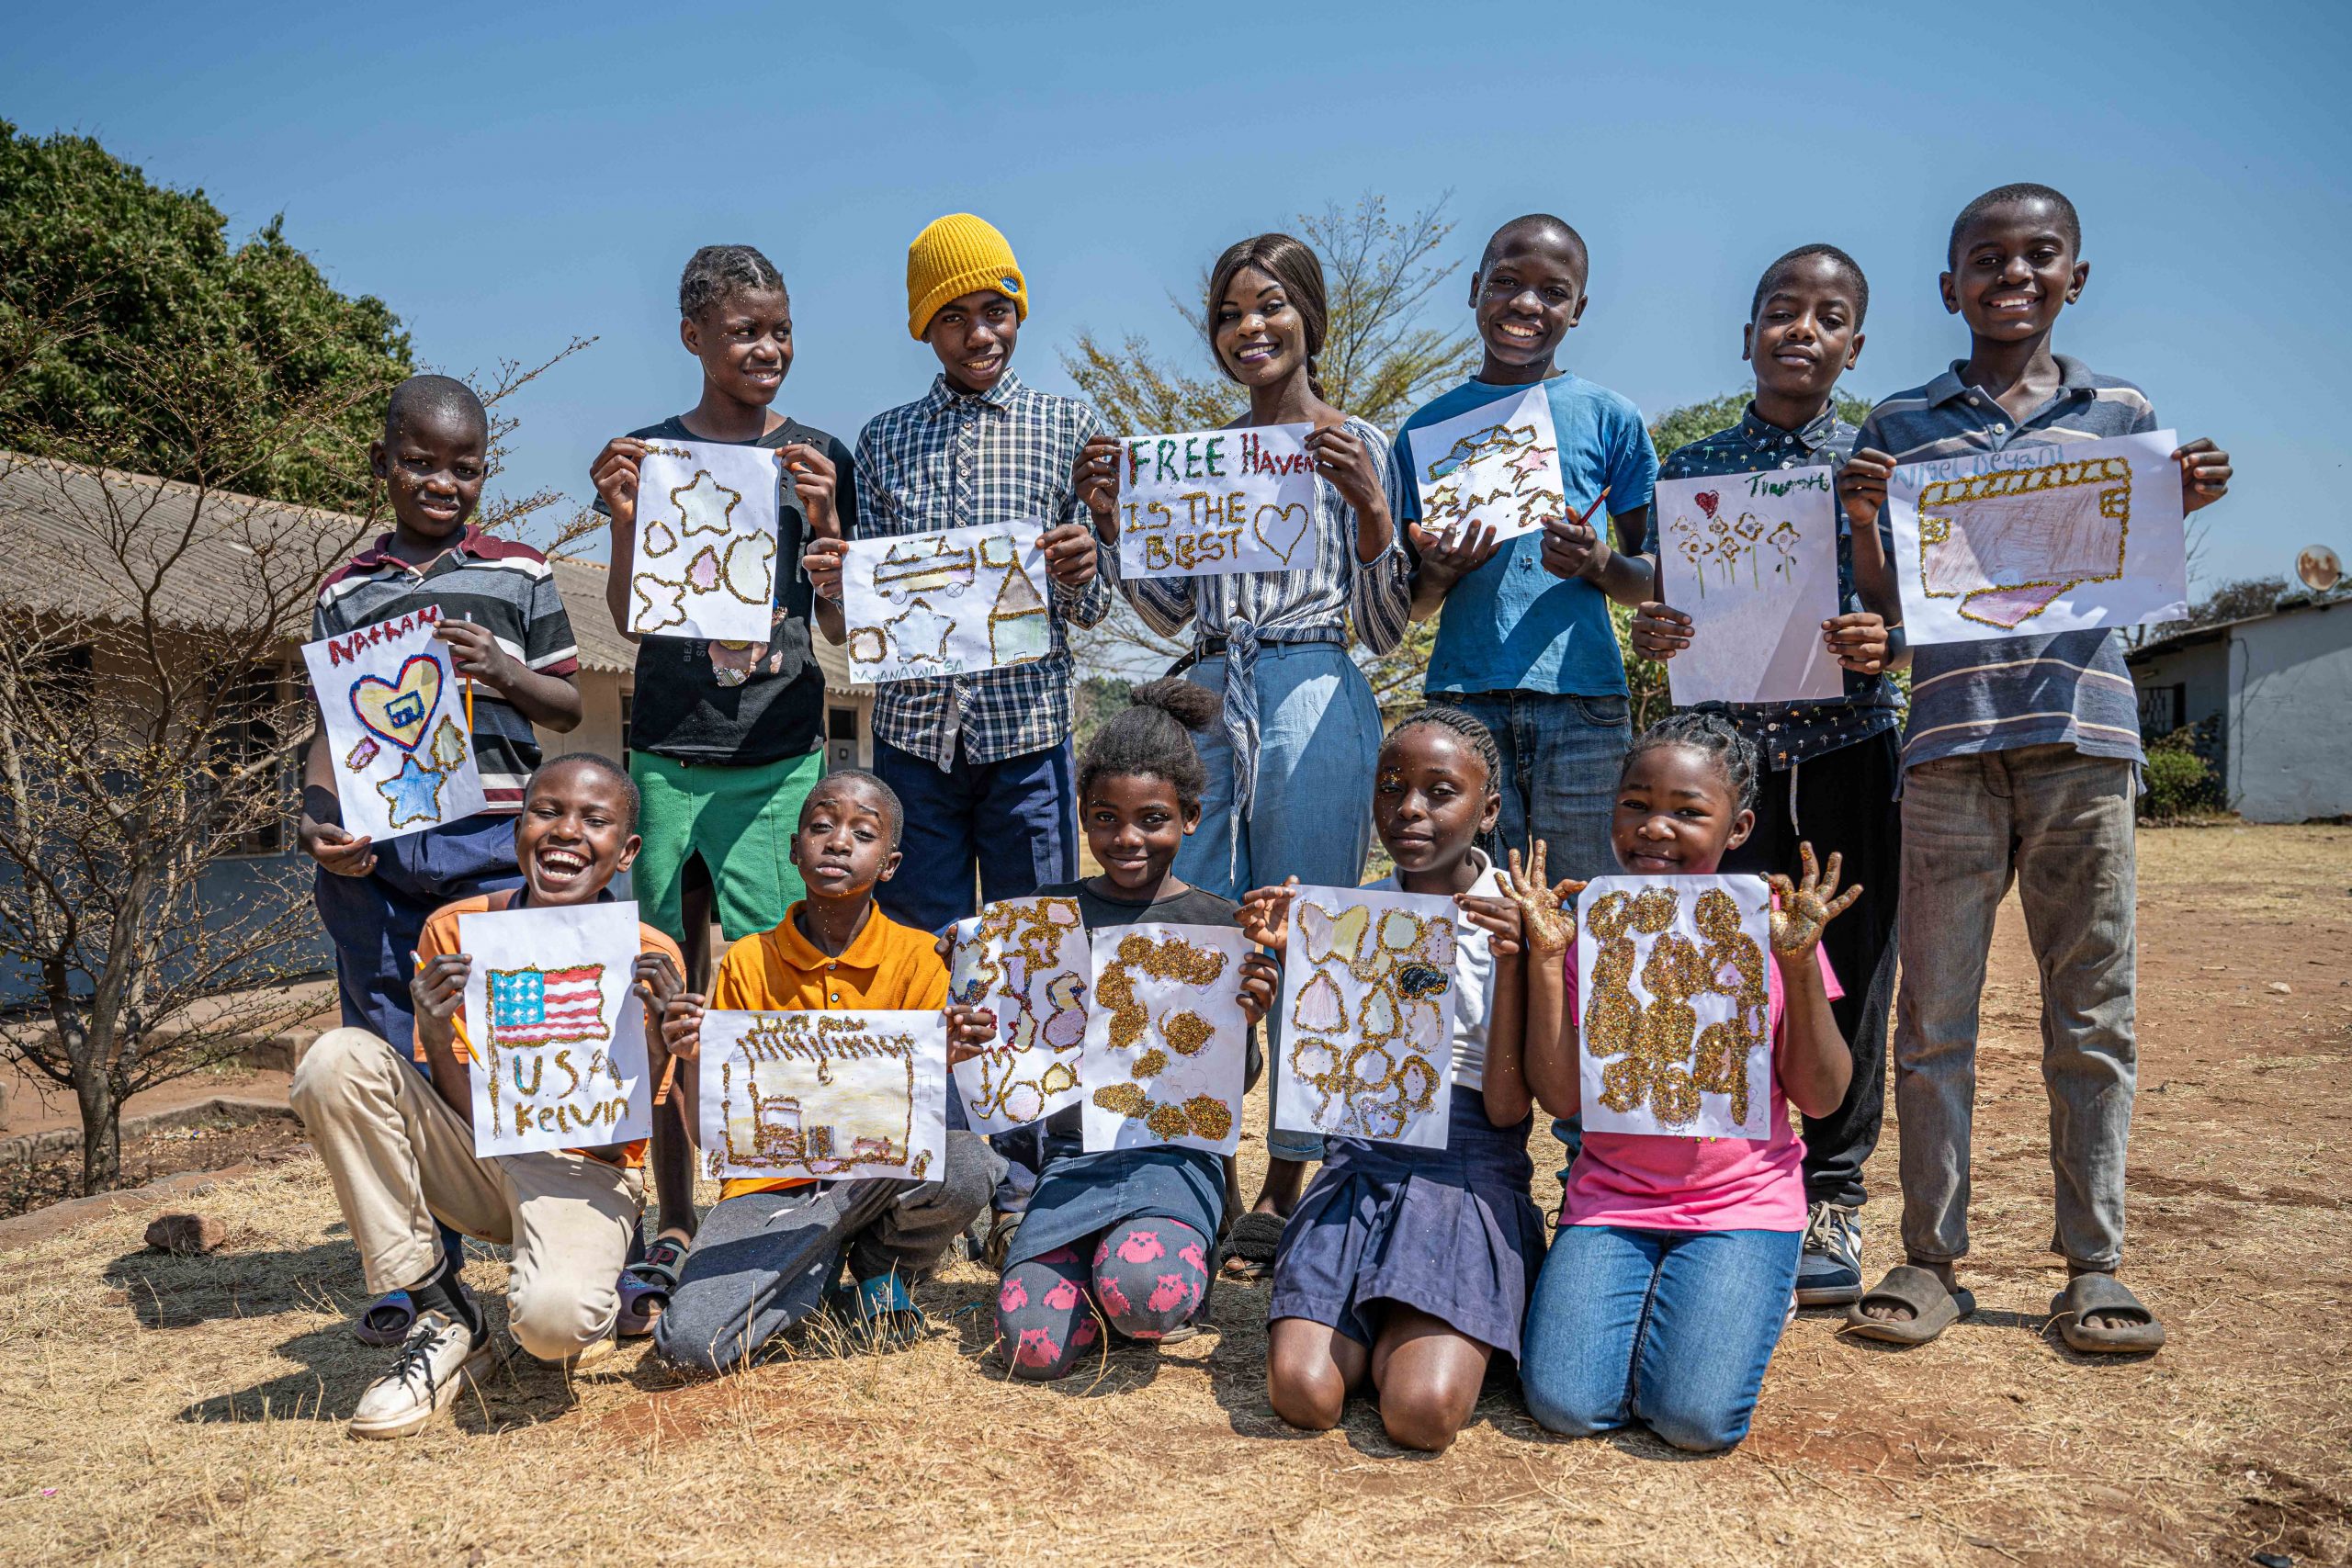 local children showing their artwork